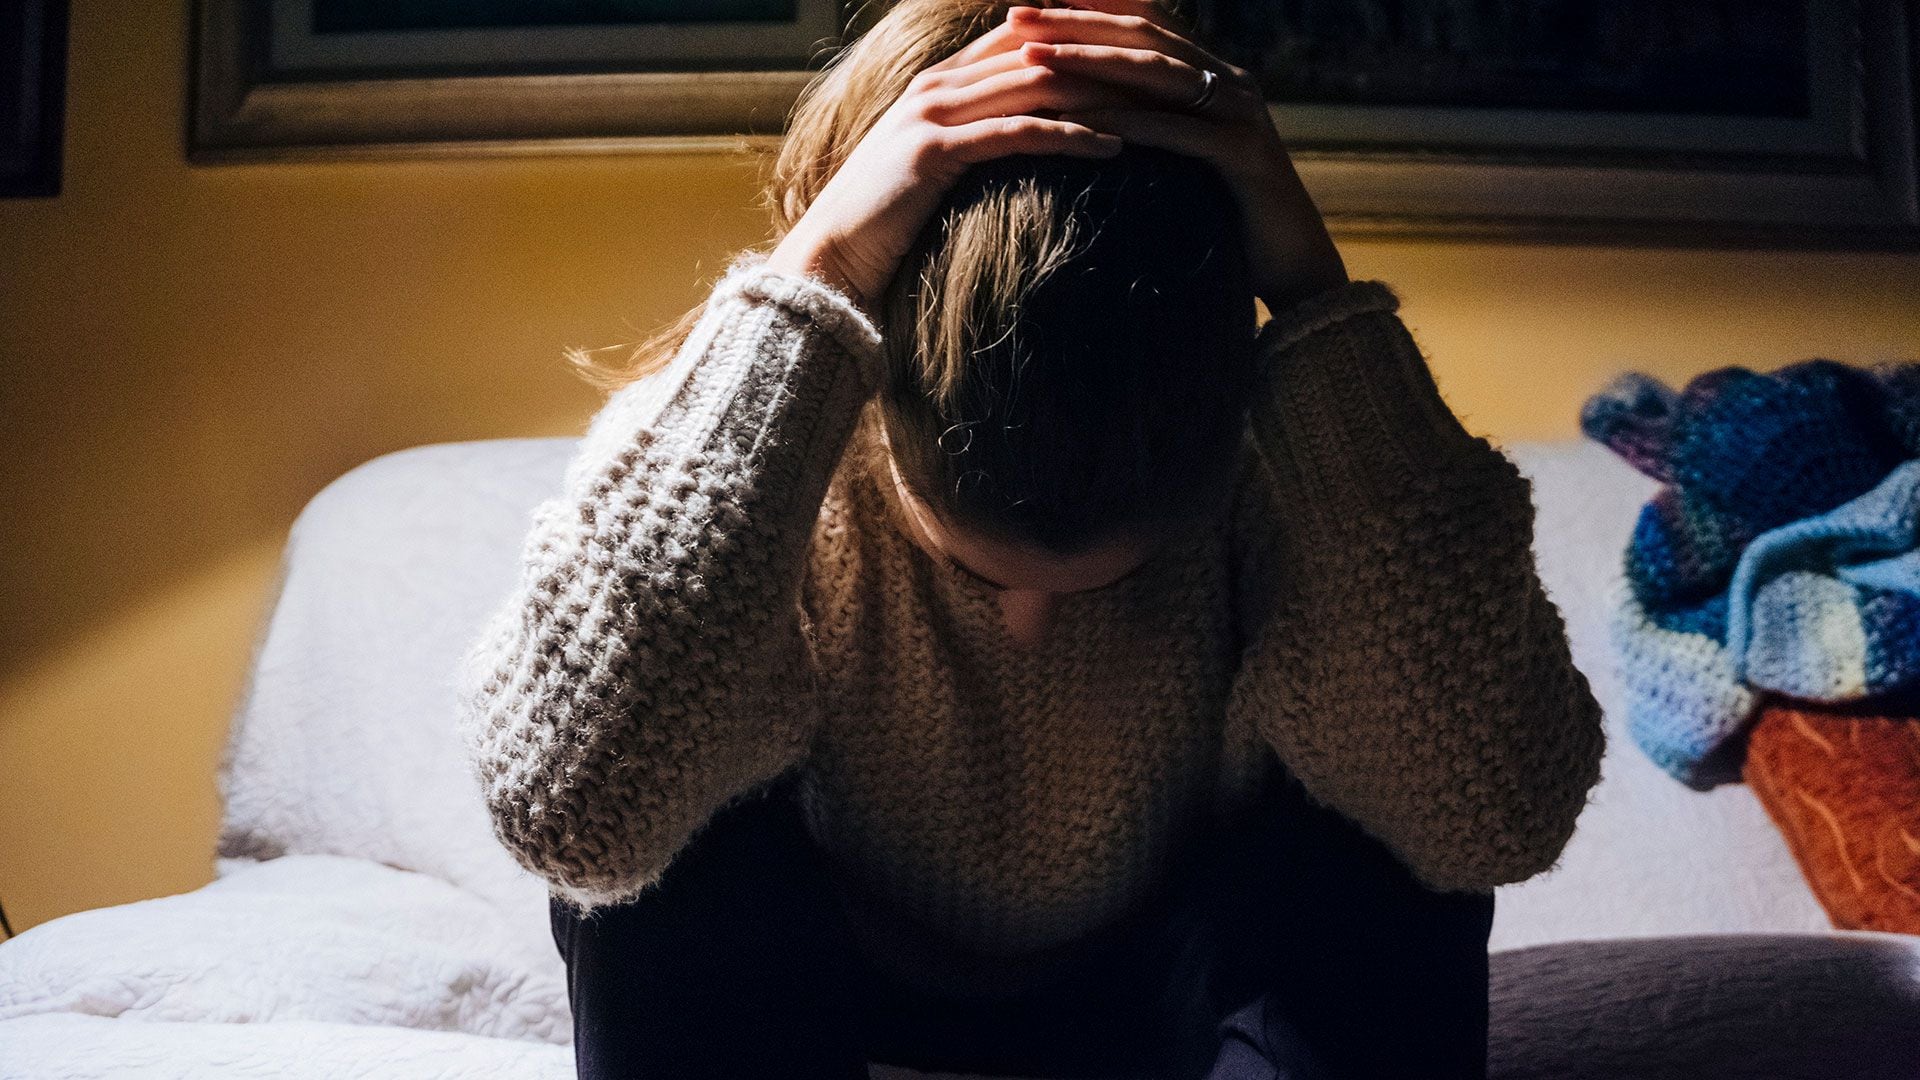 El estado depresivo no se caracteriza por una disminución del estado de ánimo, sino más bien por un aumento del mismo, una afectividad desmedida orientada hacia el displacer
(Getty Images)